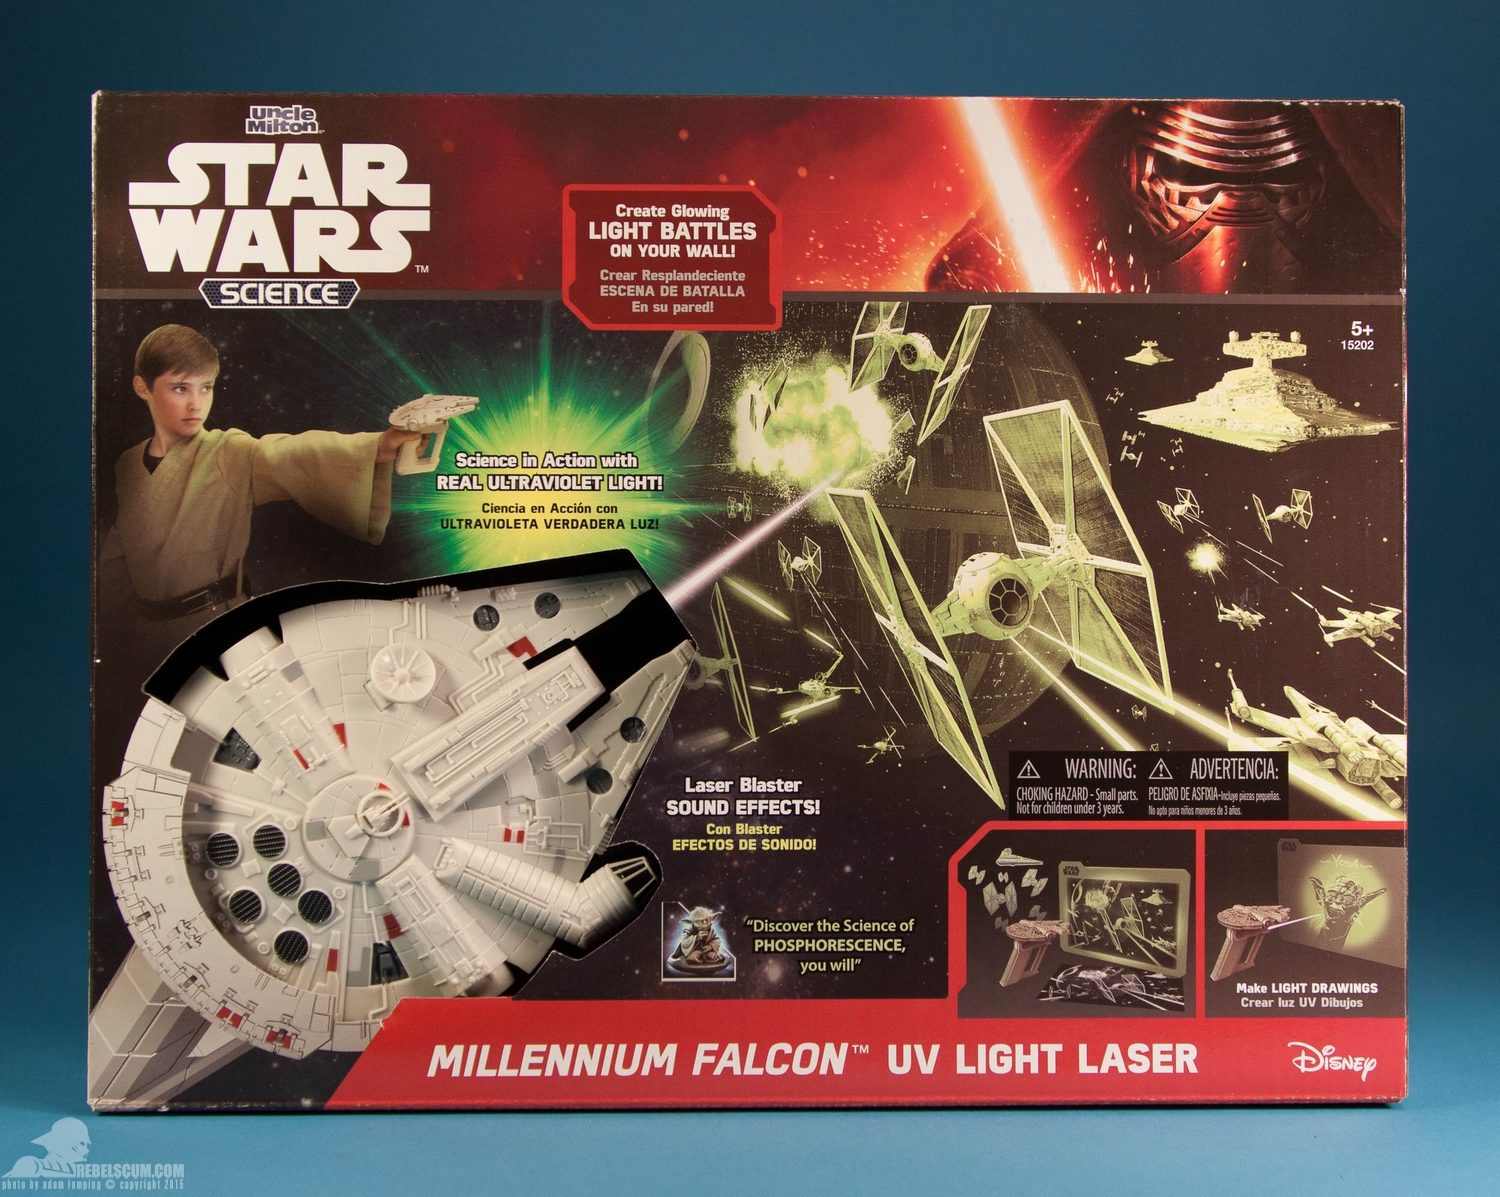 uncle-milton-star-wars-science-millennium-falcon-uv-light-laser-017.jpg